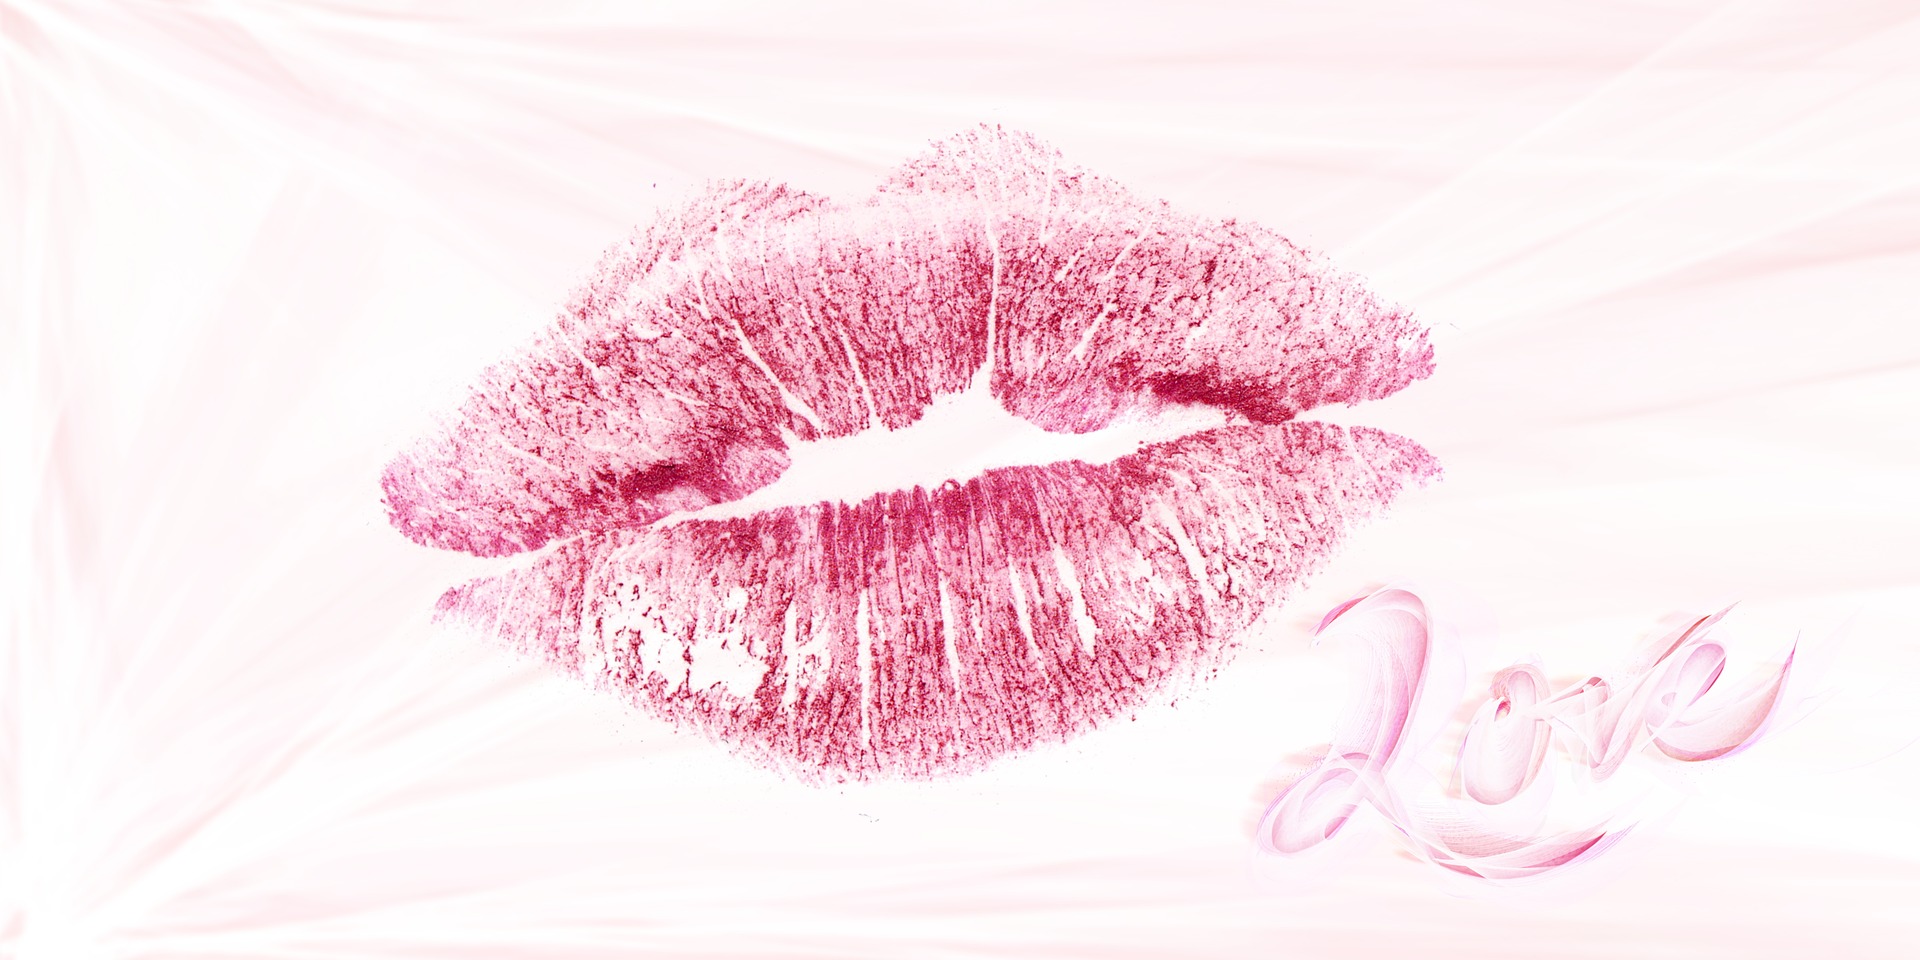 Lipstick imprint after a kiss